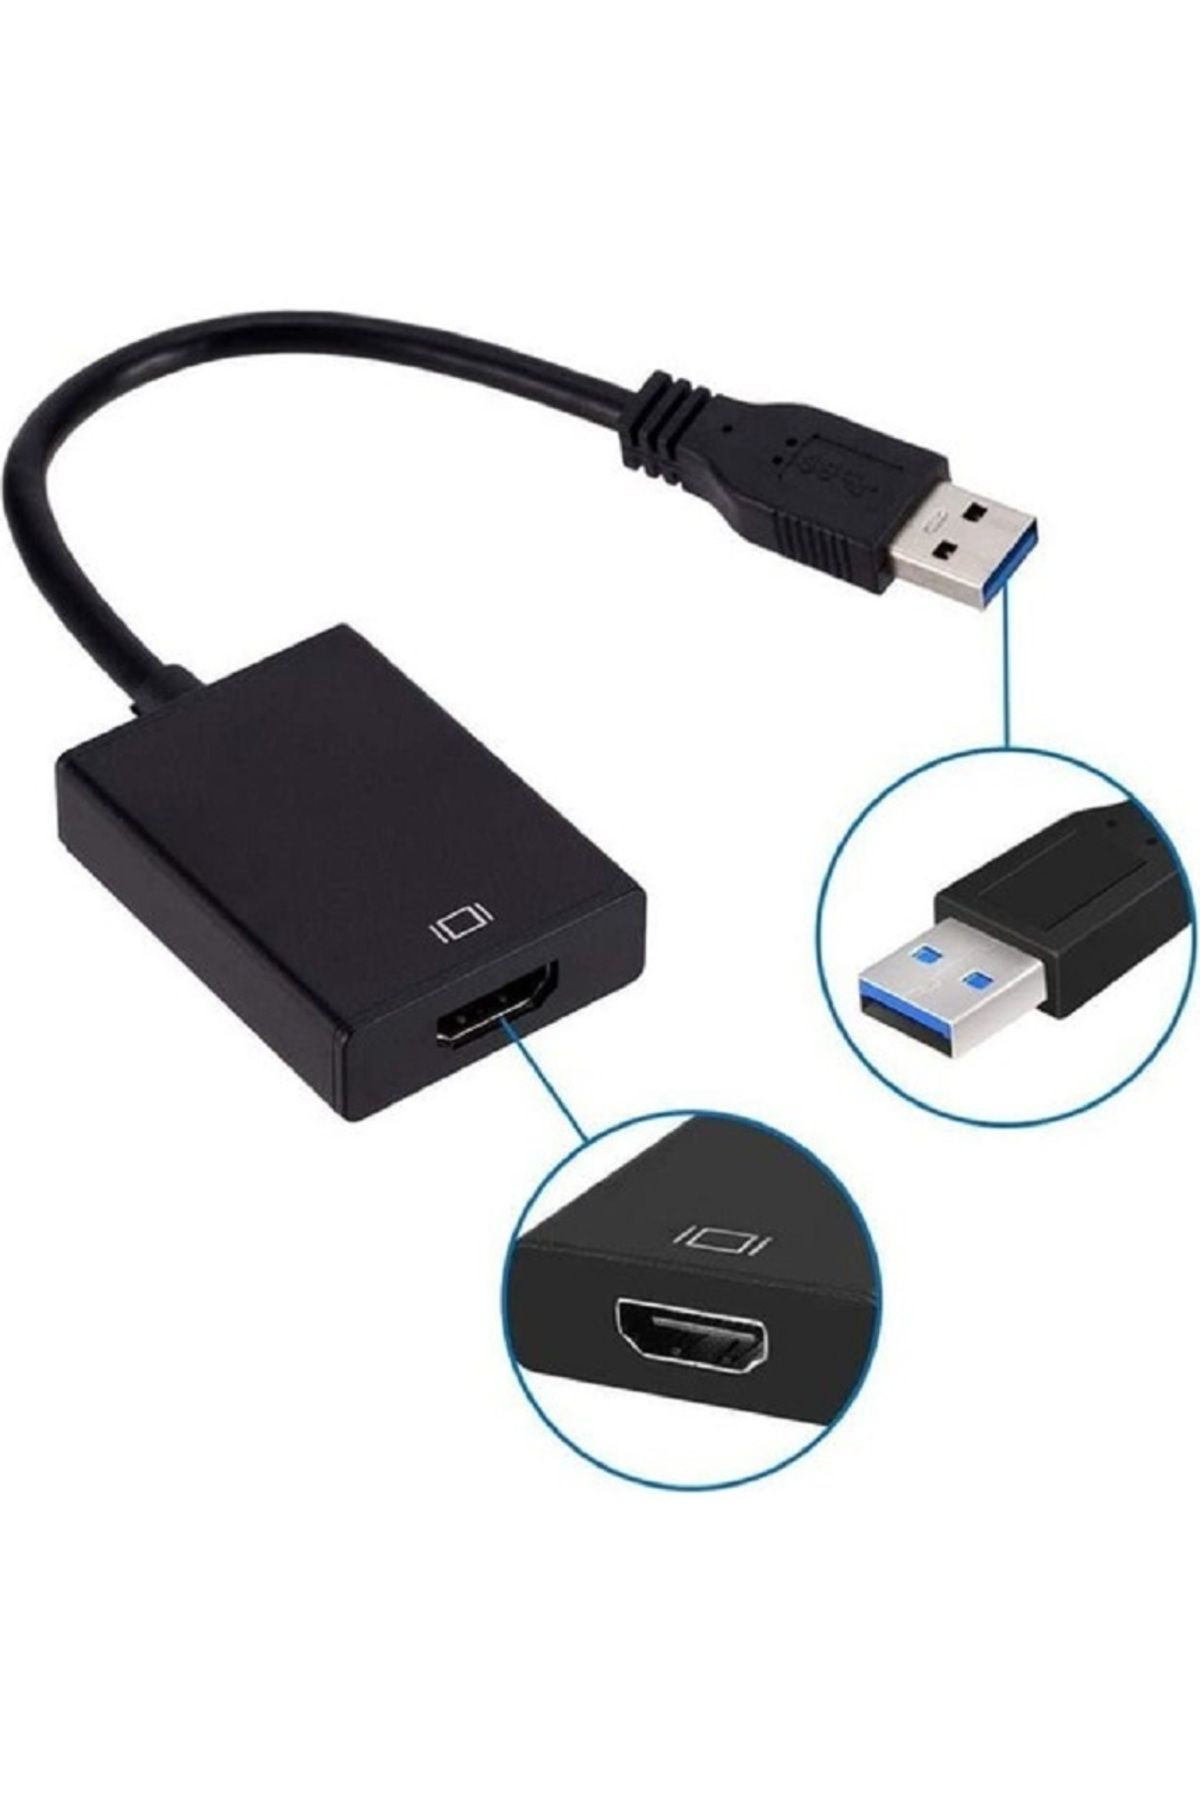 ZRH USB 3.0 To HDMI Çevirici Dönüştürücü Kablo Adaptör